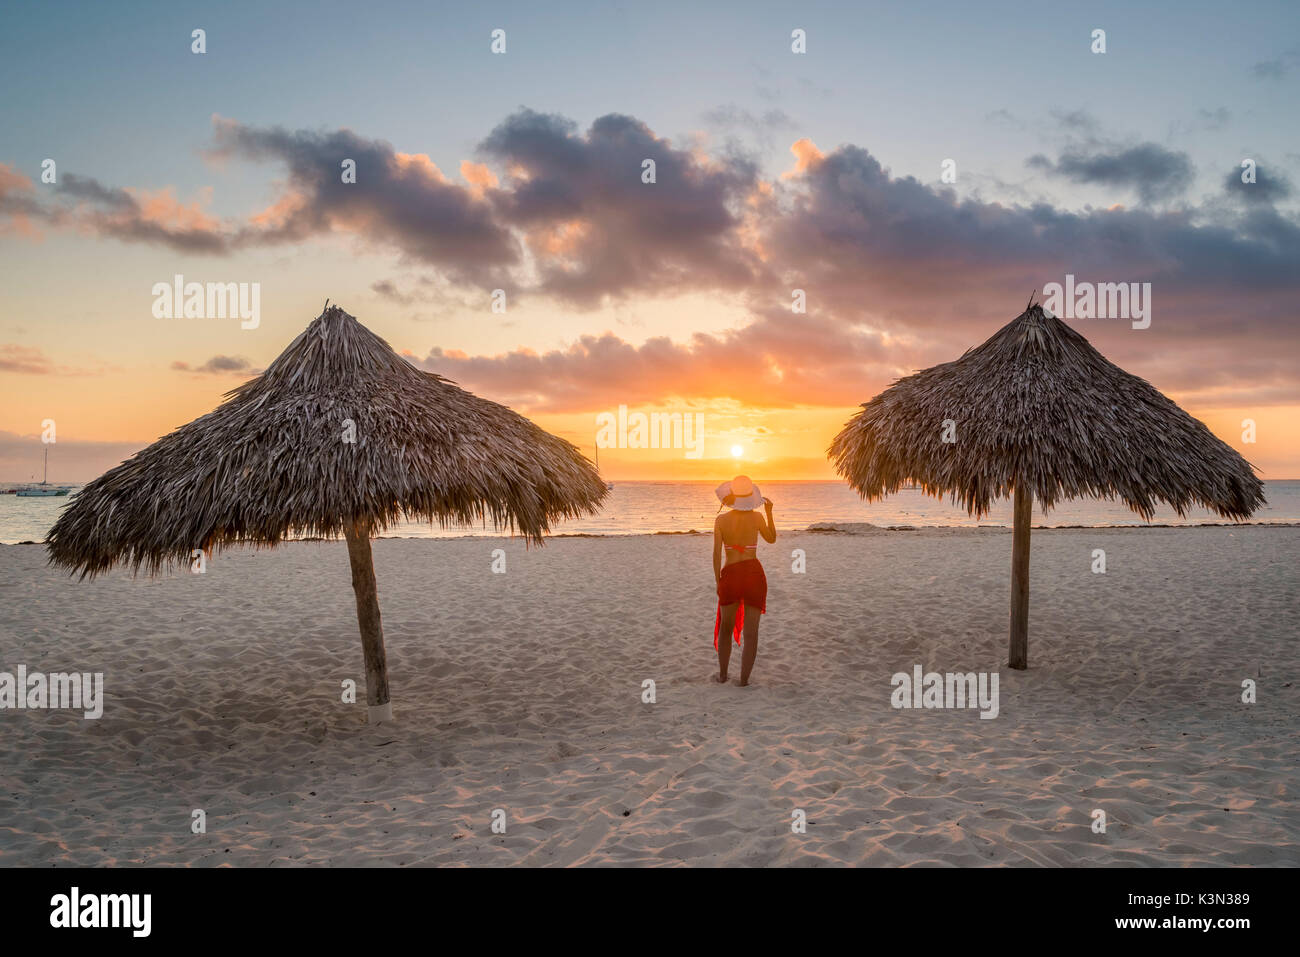 Playa Bavaro Higuey, Bávaro, Punta Cana, República Dominicana. Mujer por paja sombrillas en la playa al amanecer (MR). Foto de stock